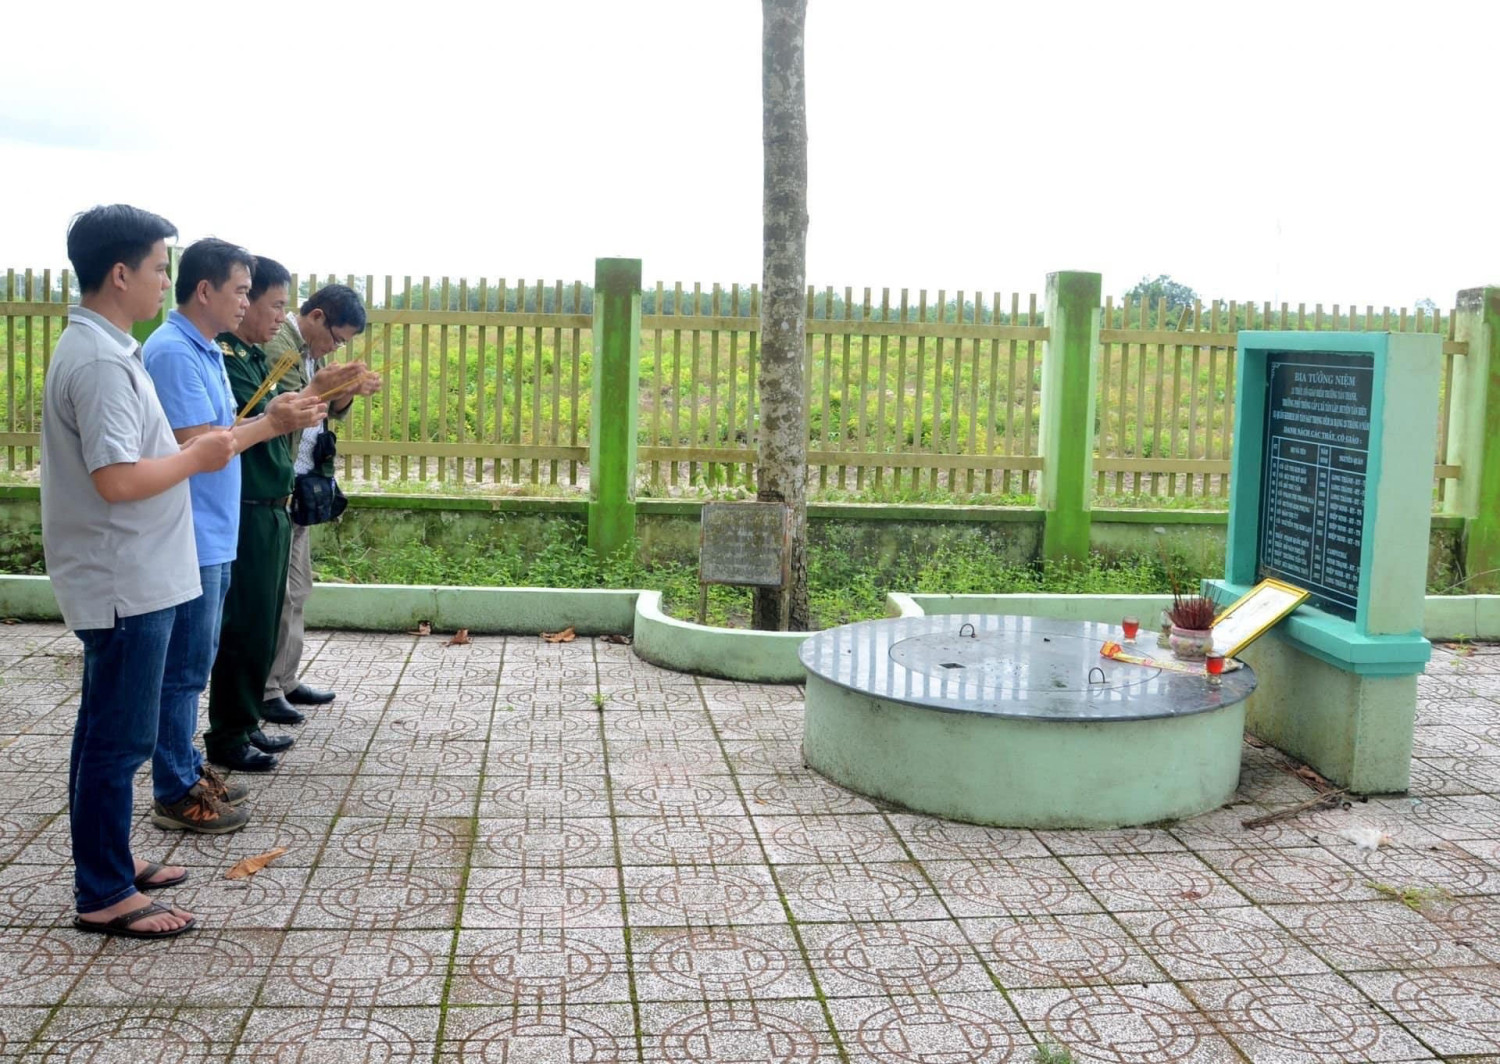 Hình: Bia chứng tích tội ác của Tập đoàn Pol Pot-Ieng Sary tại xã Tân Lập, huyện Tân Biên, nơi 11 thầy cô giáo bị thảm sát 